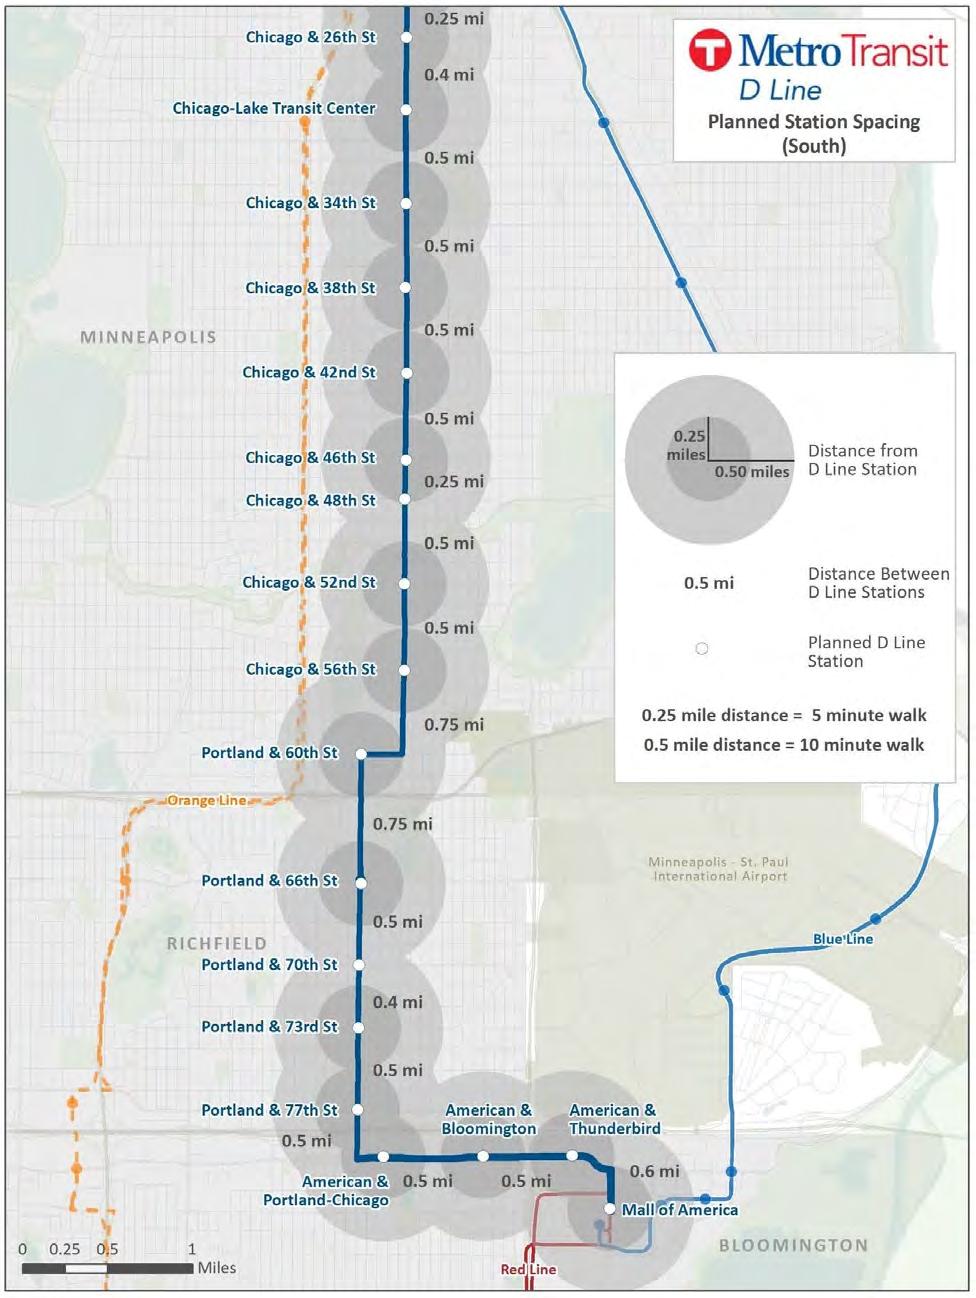 D Line Station Plan Section V: Station Plans Figure 19: